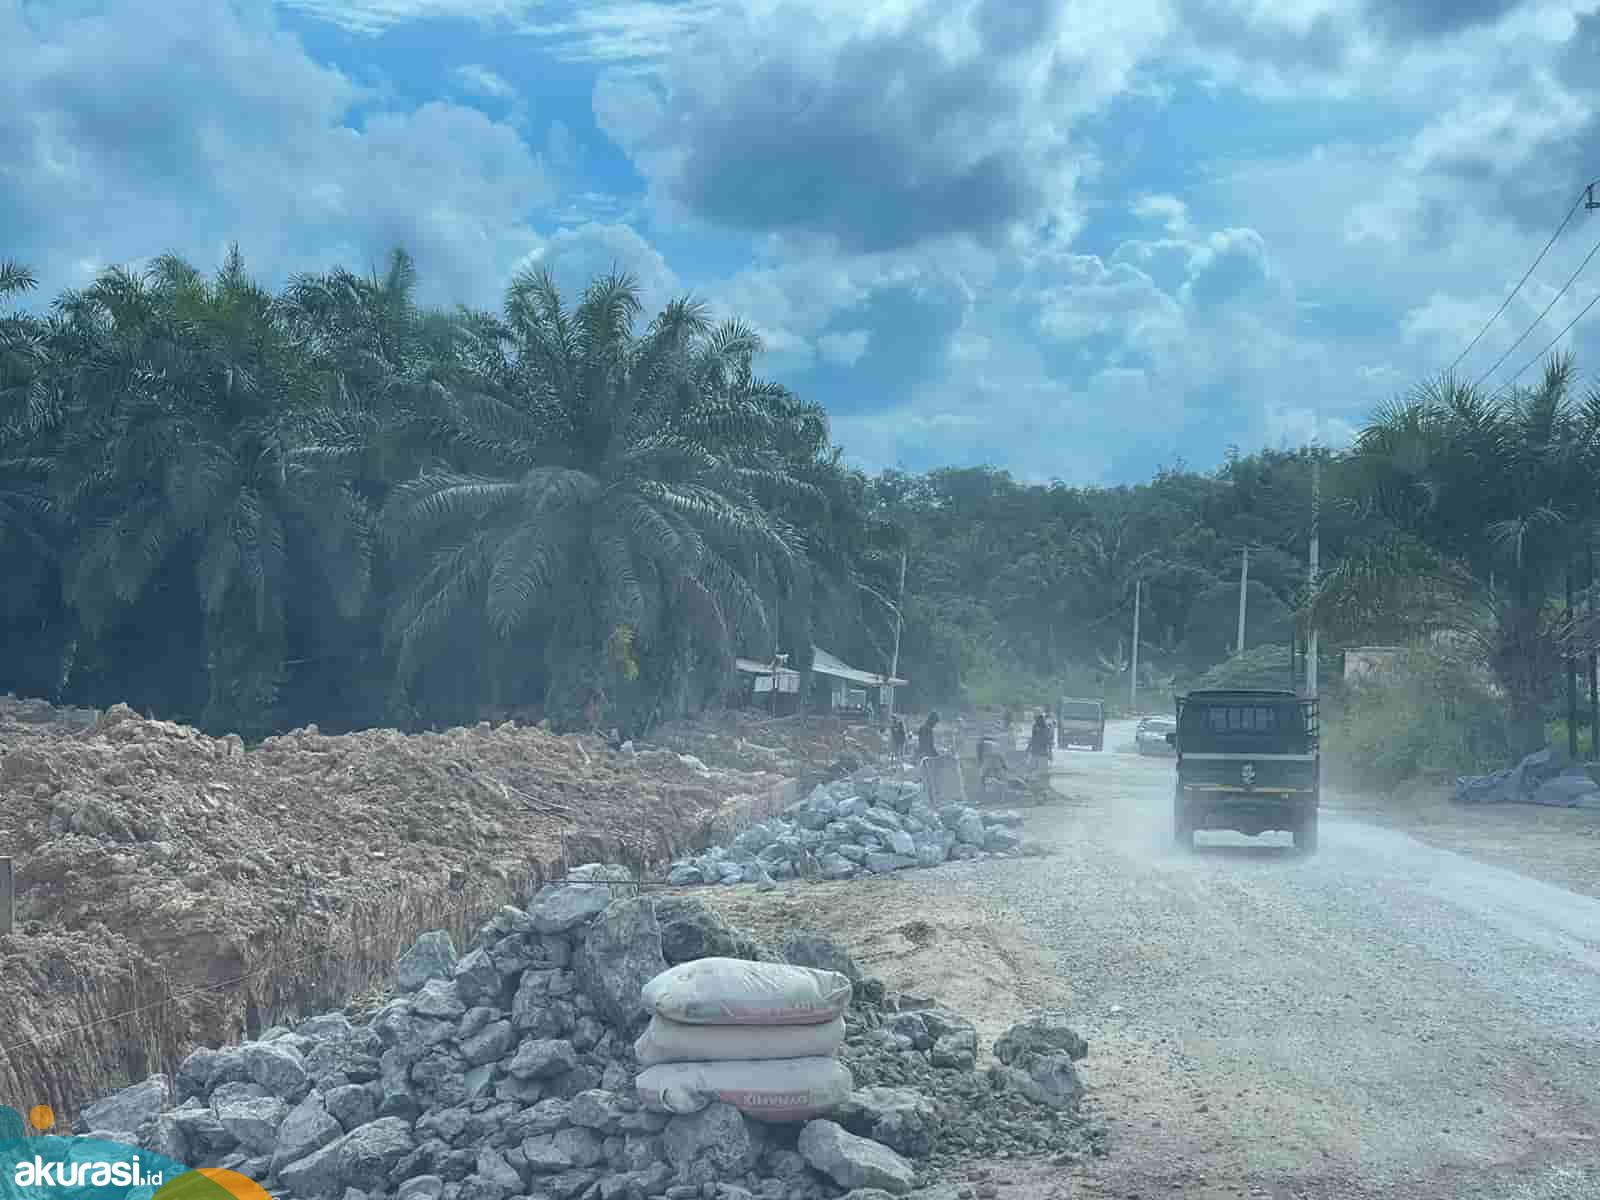 Imbas Ratusan Perusahaan Tambang dan Sawit di Kaltim Tidak Punya Jalan Khusus, Jalan Rakyat Pun Babak Belur